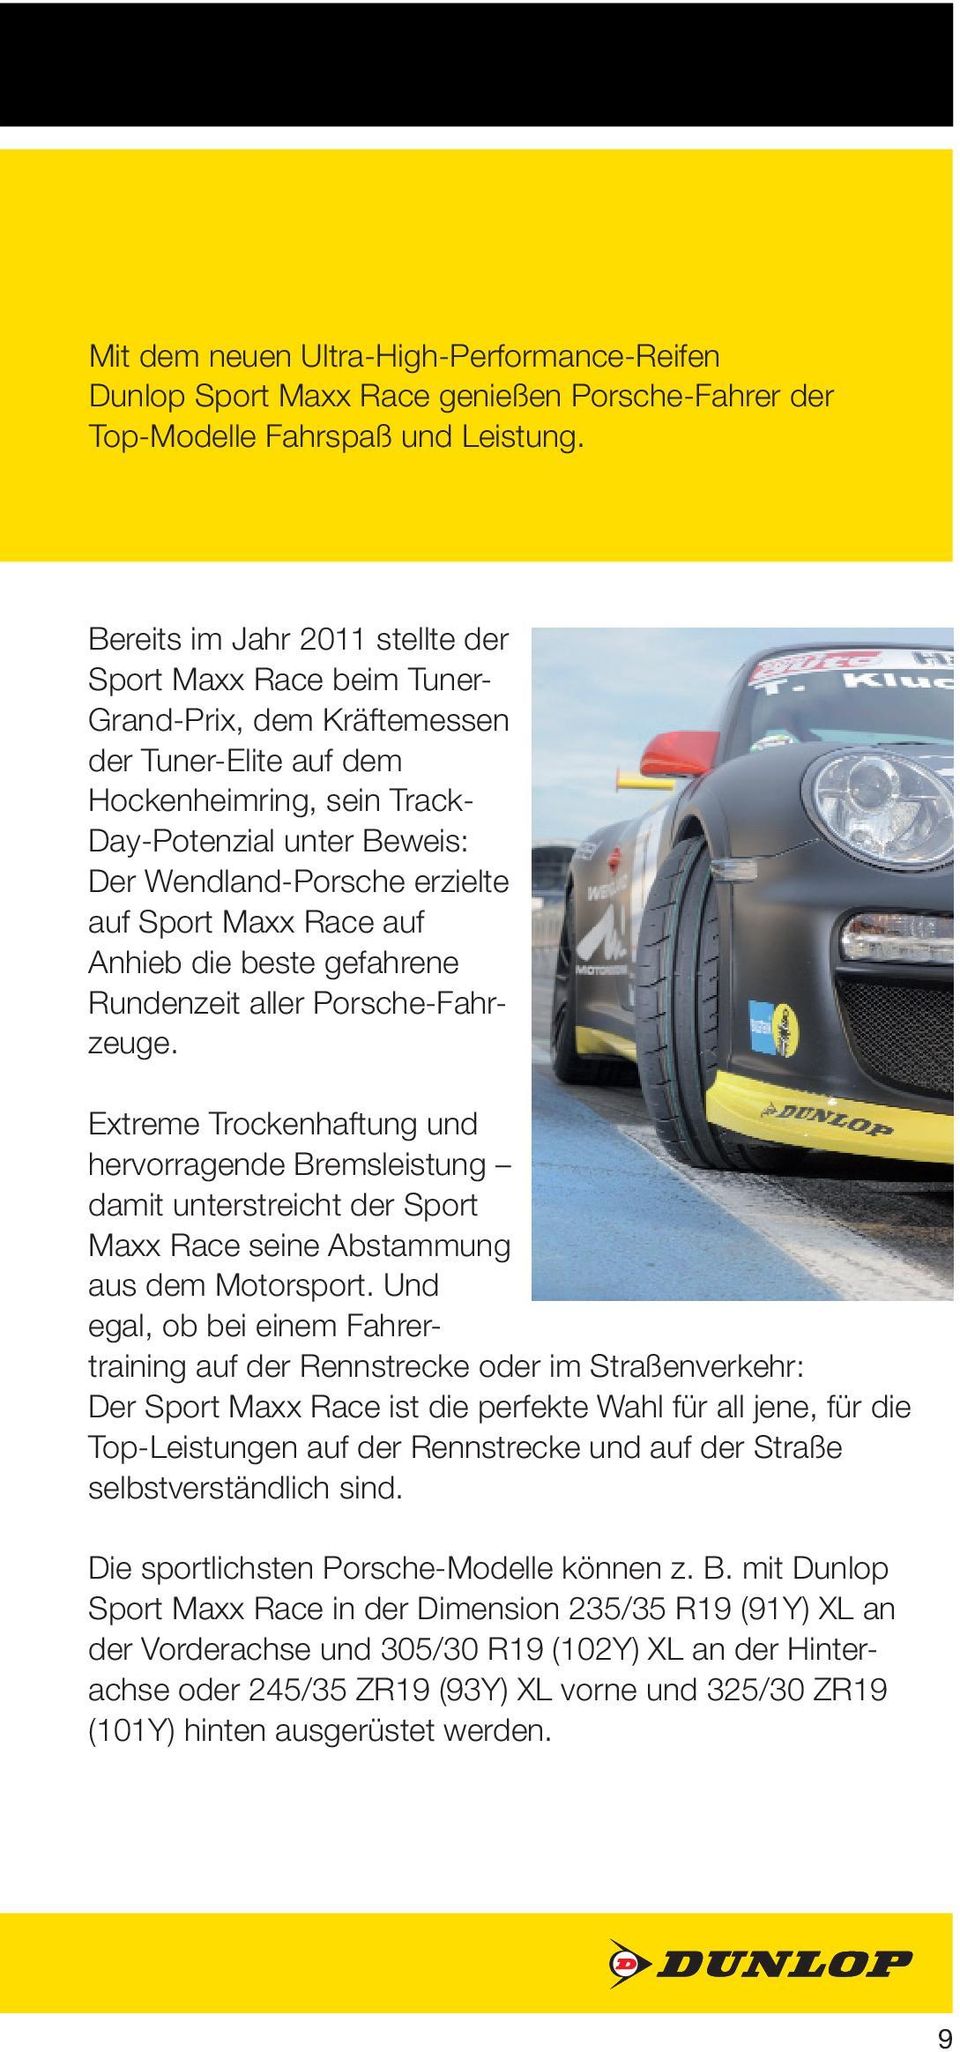 erzielte auf Sport Maxx Race auf Anhieb die beste gefahrene Rundenzeit aller Porsche-Fahrzeuge.